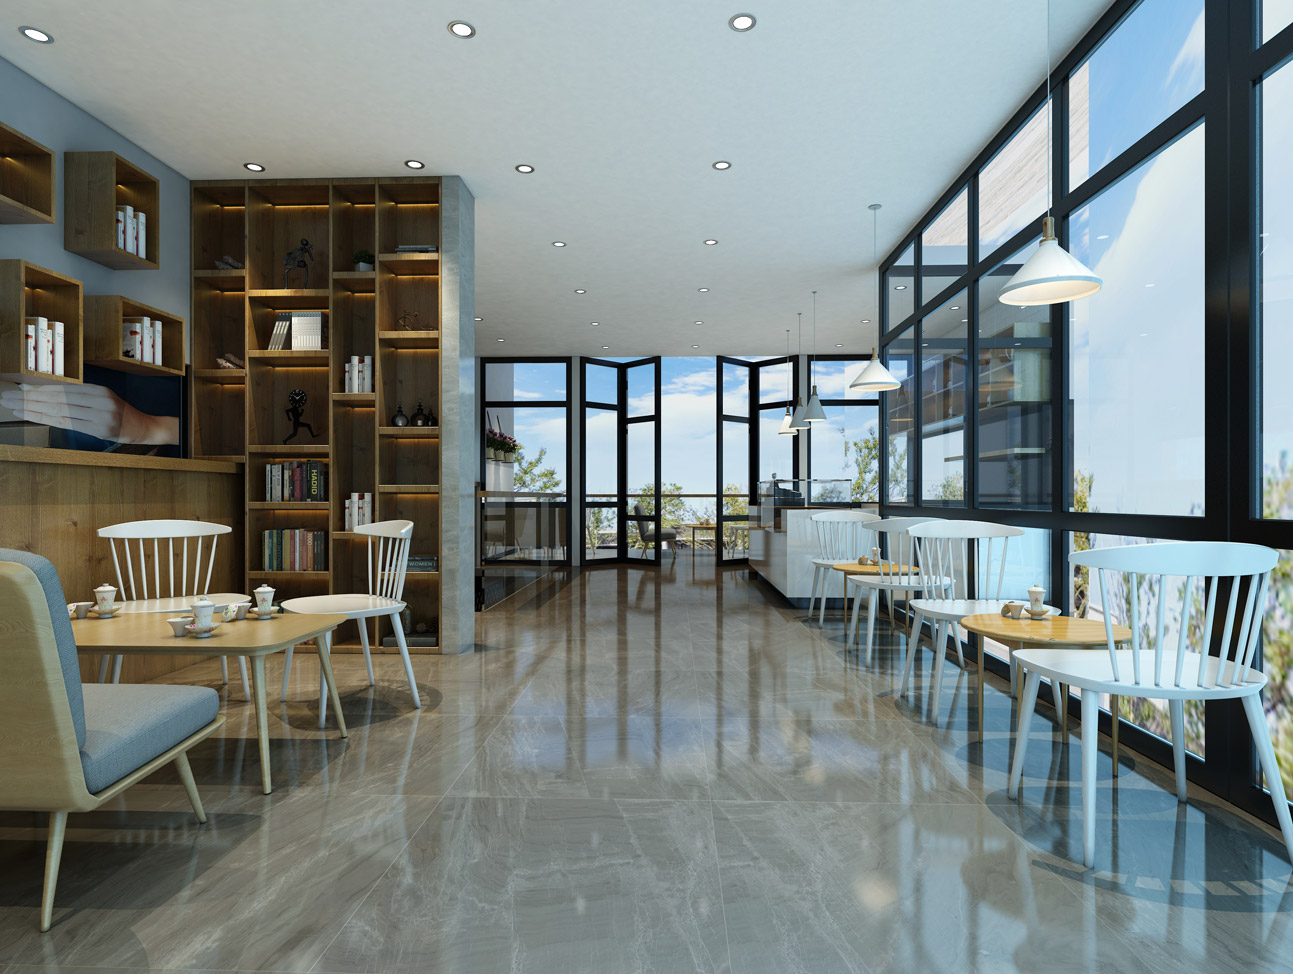 大理石瓷砖斯星河传说浅灰IPGS90058商业餐厅空间效果图1